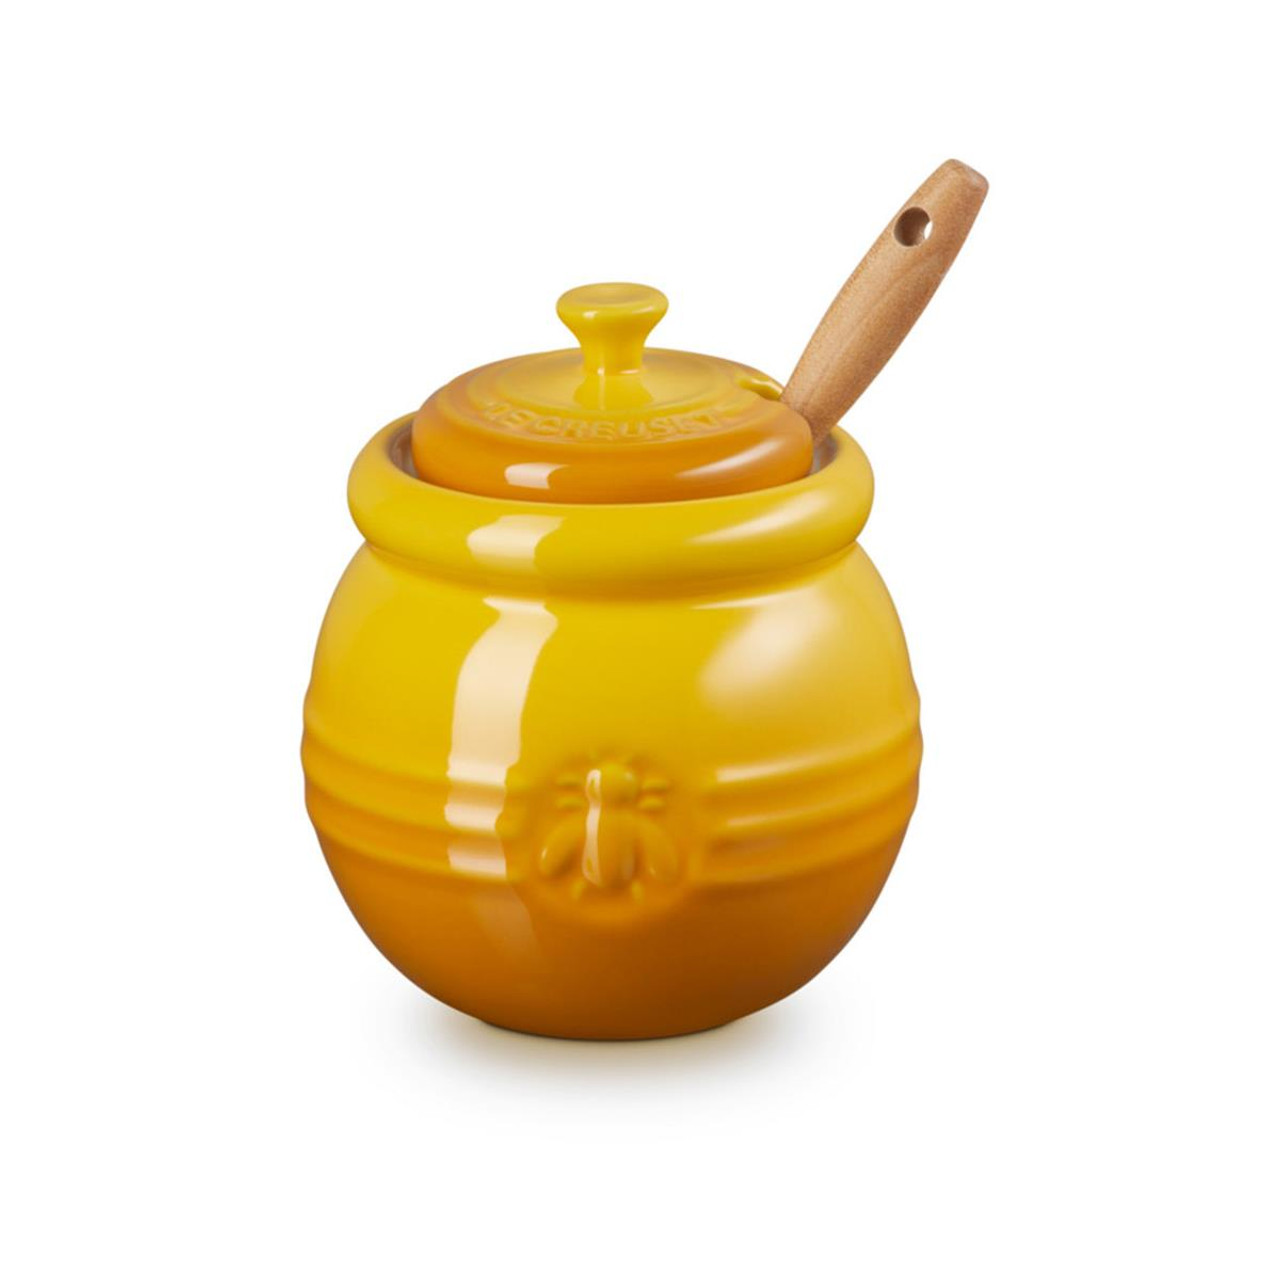 Is the Le Creuset honey pot dishwasher safe?